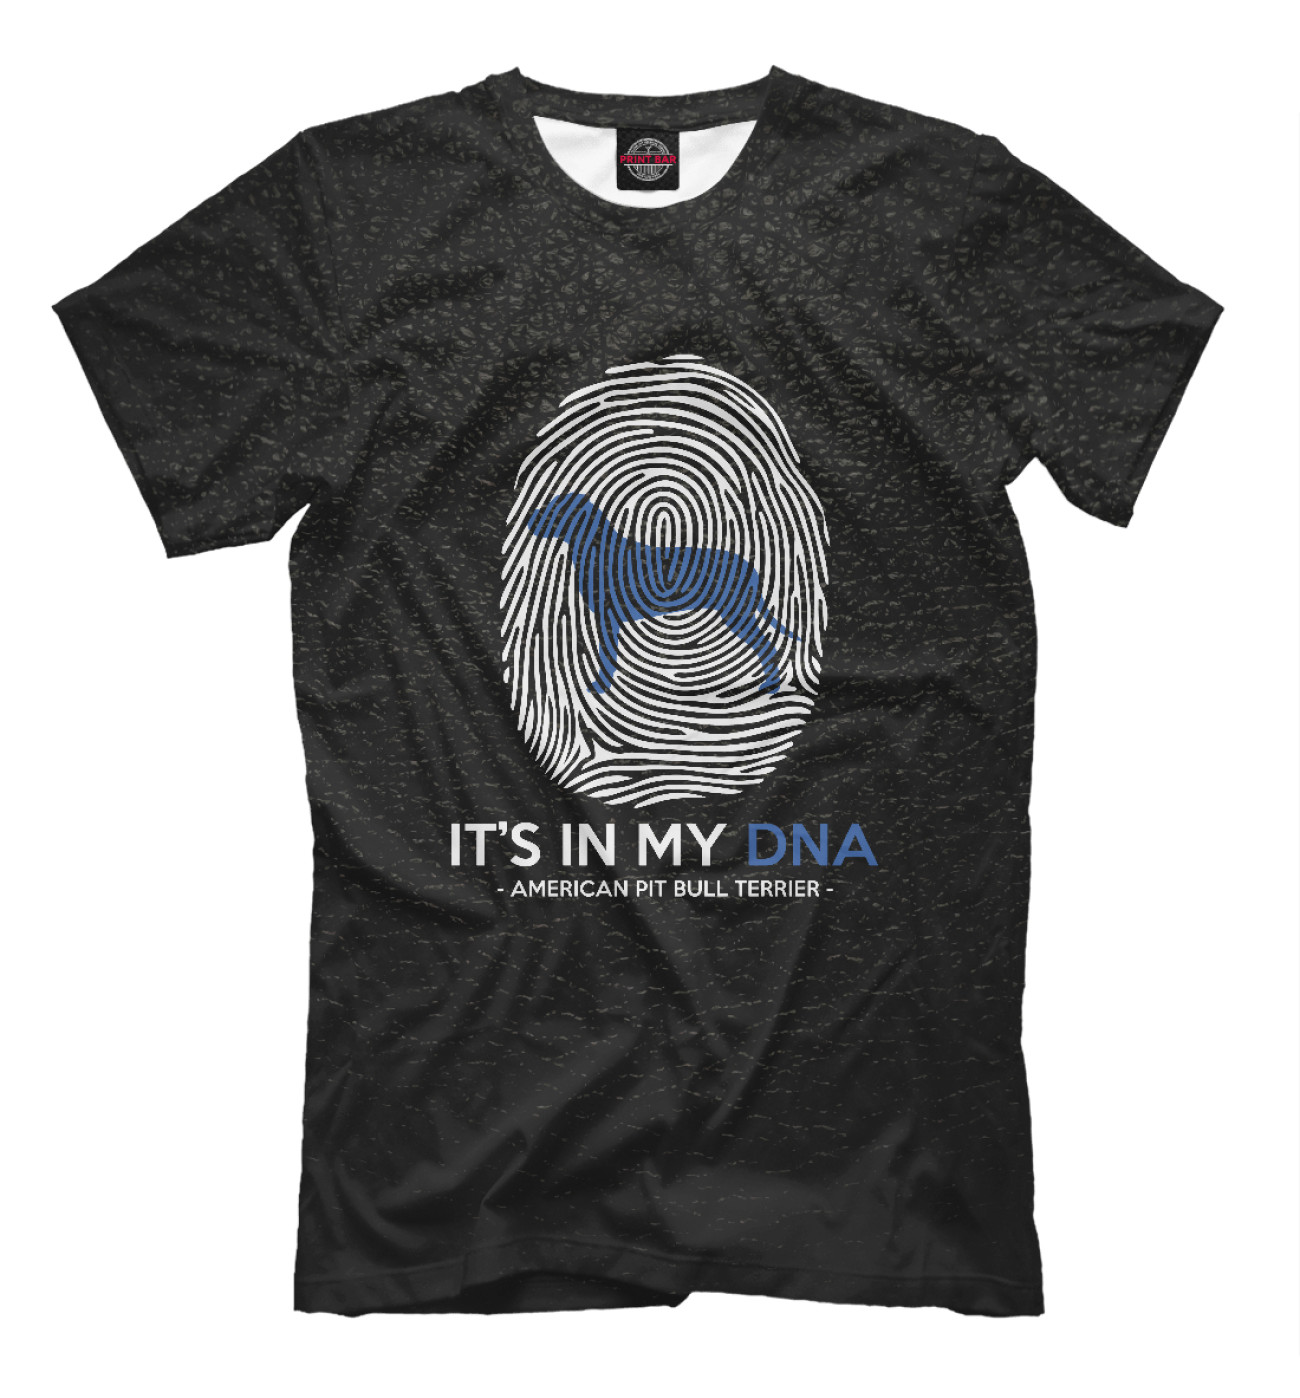 Мужская Футболка It's my DNA Pit Bull Terrie, артикул: BLT-150550-fut-2